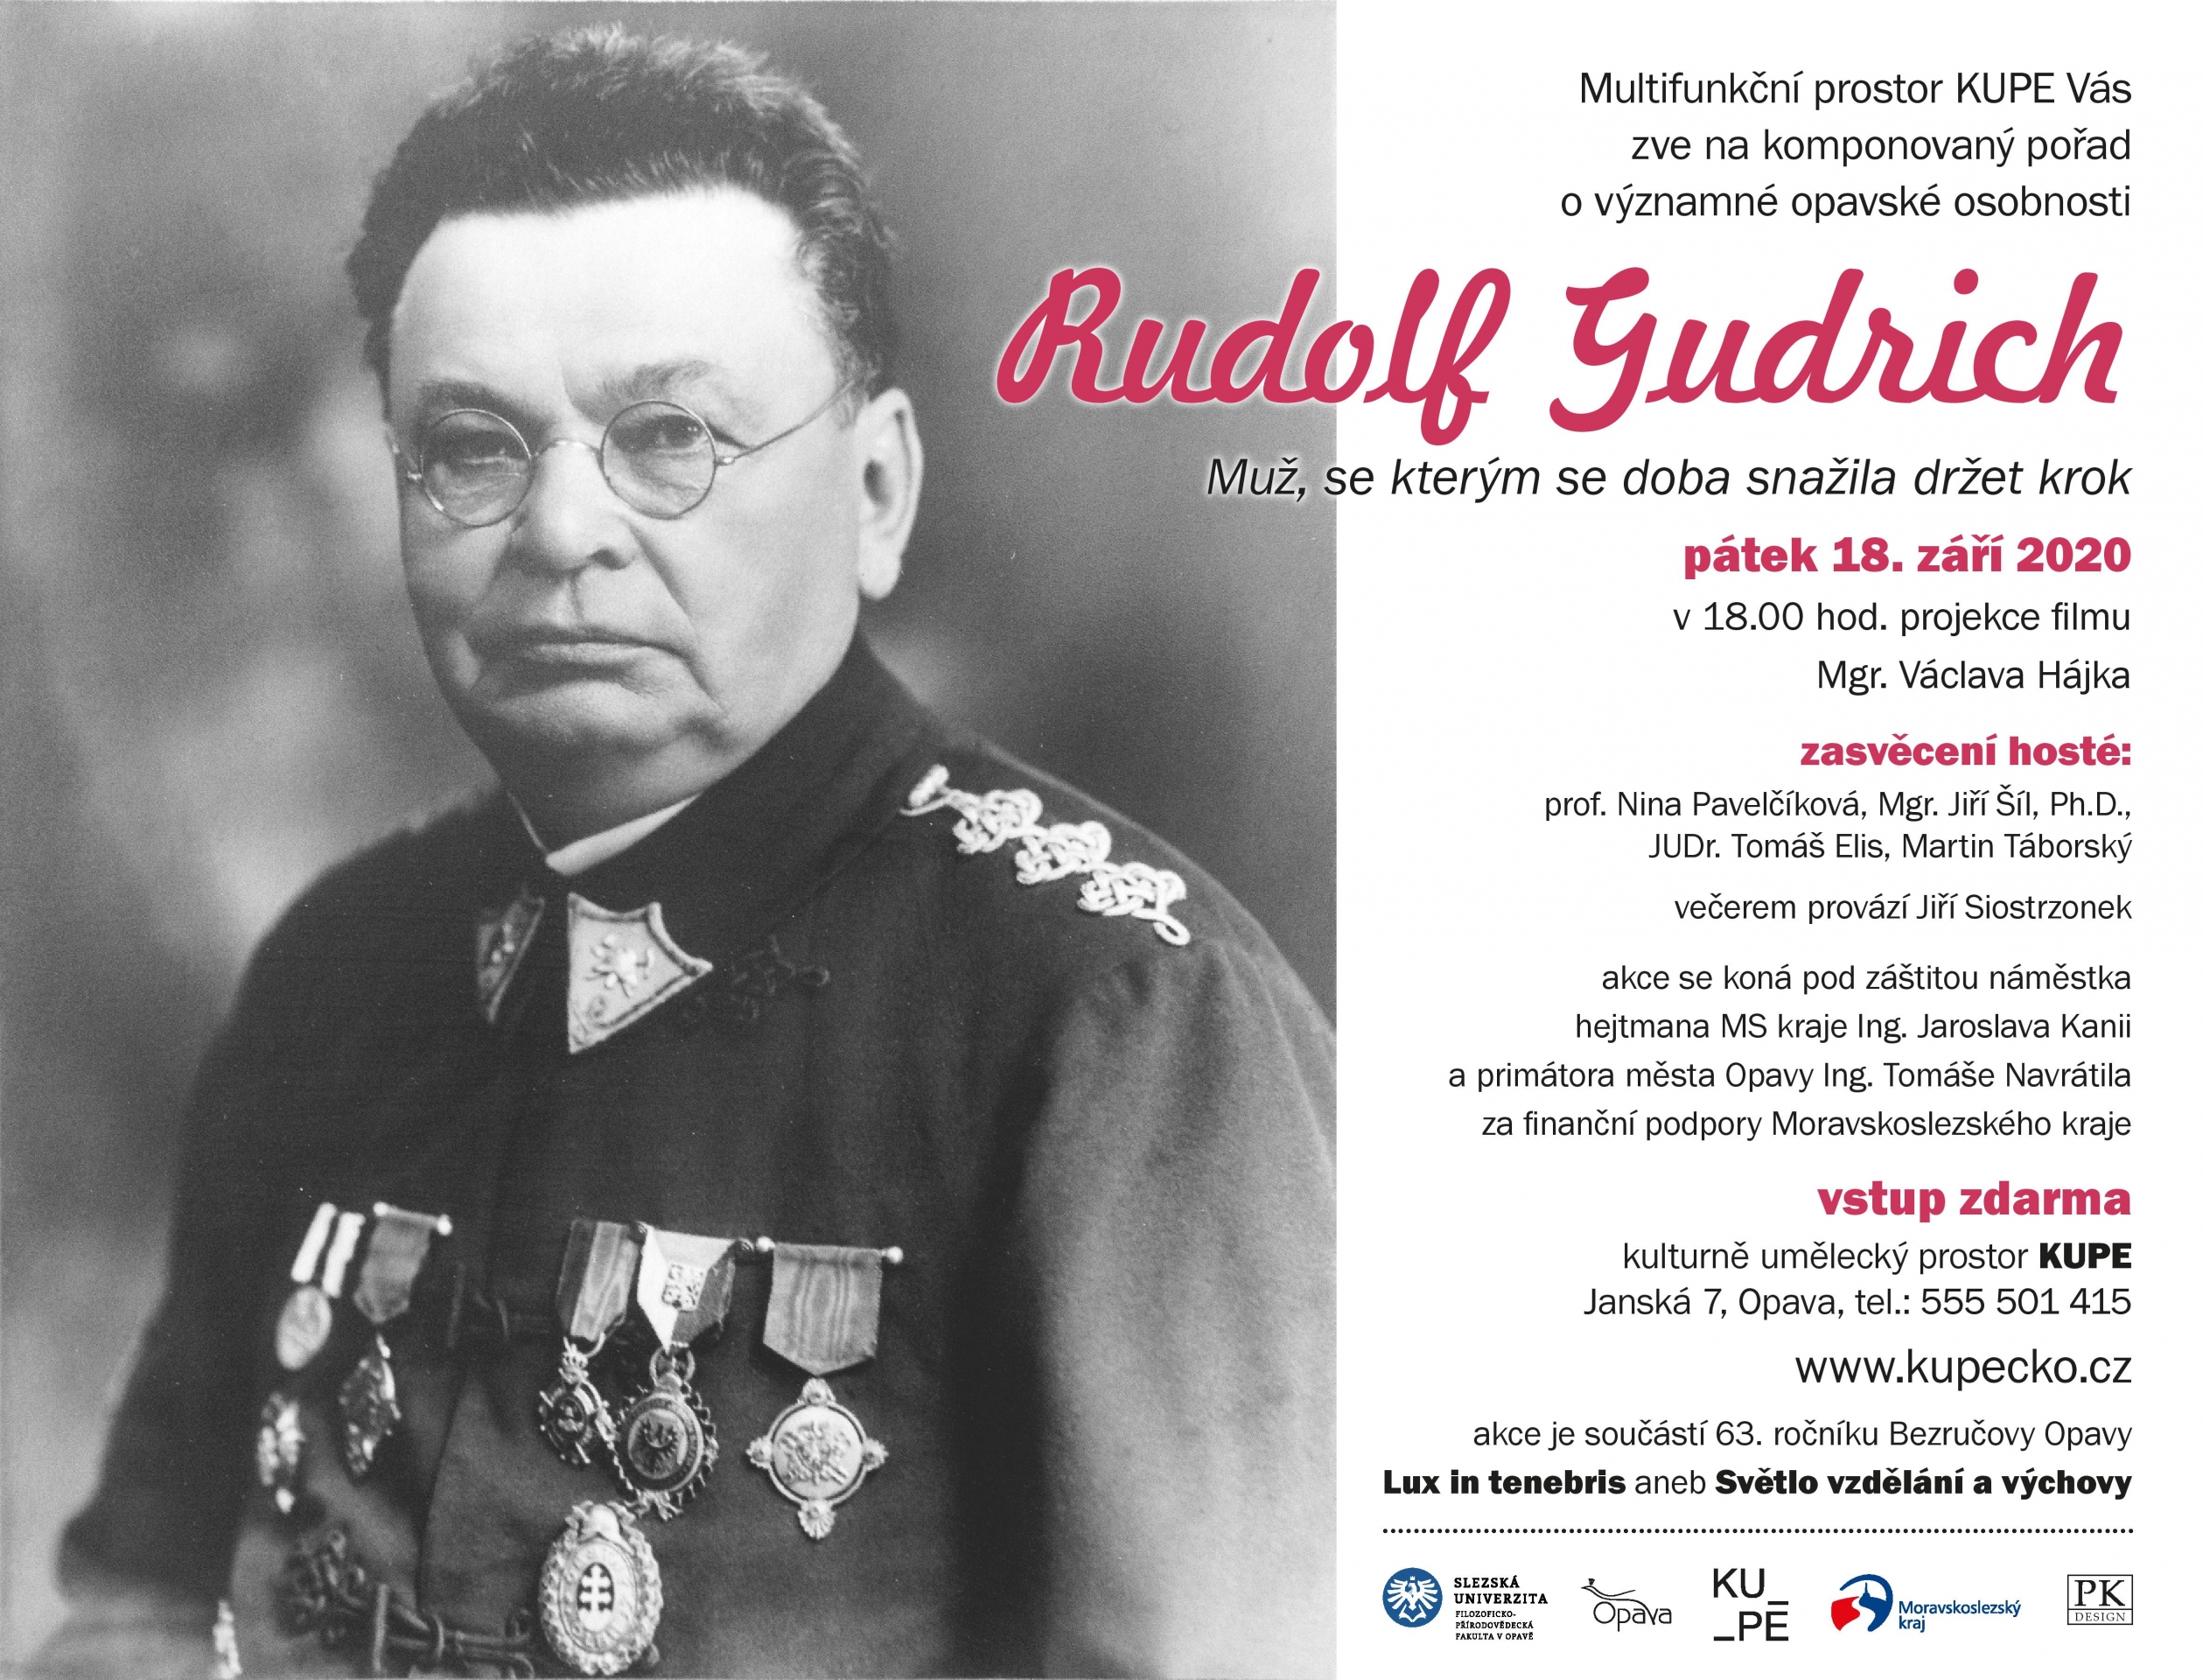 Rudolf Gudrich